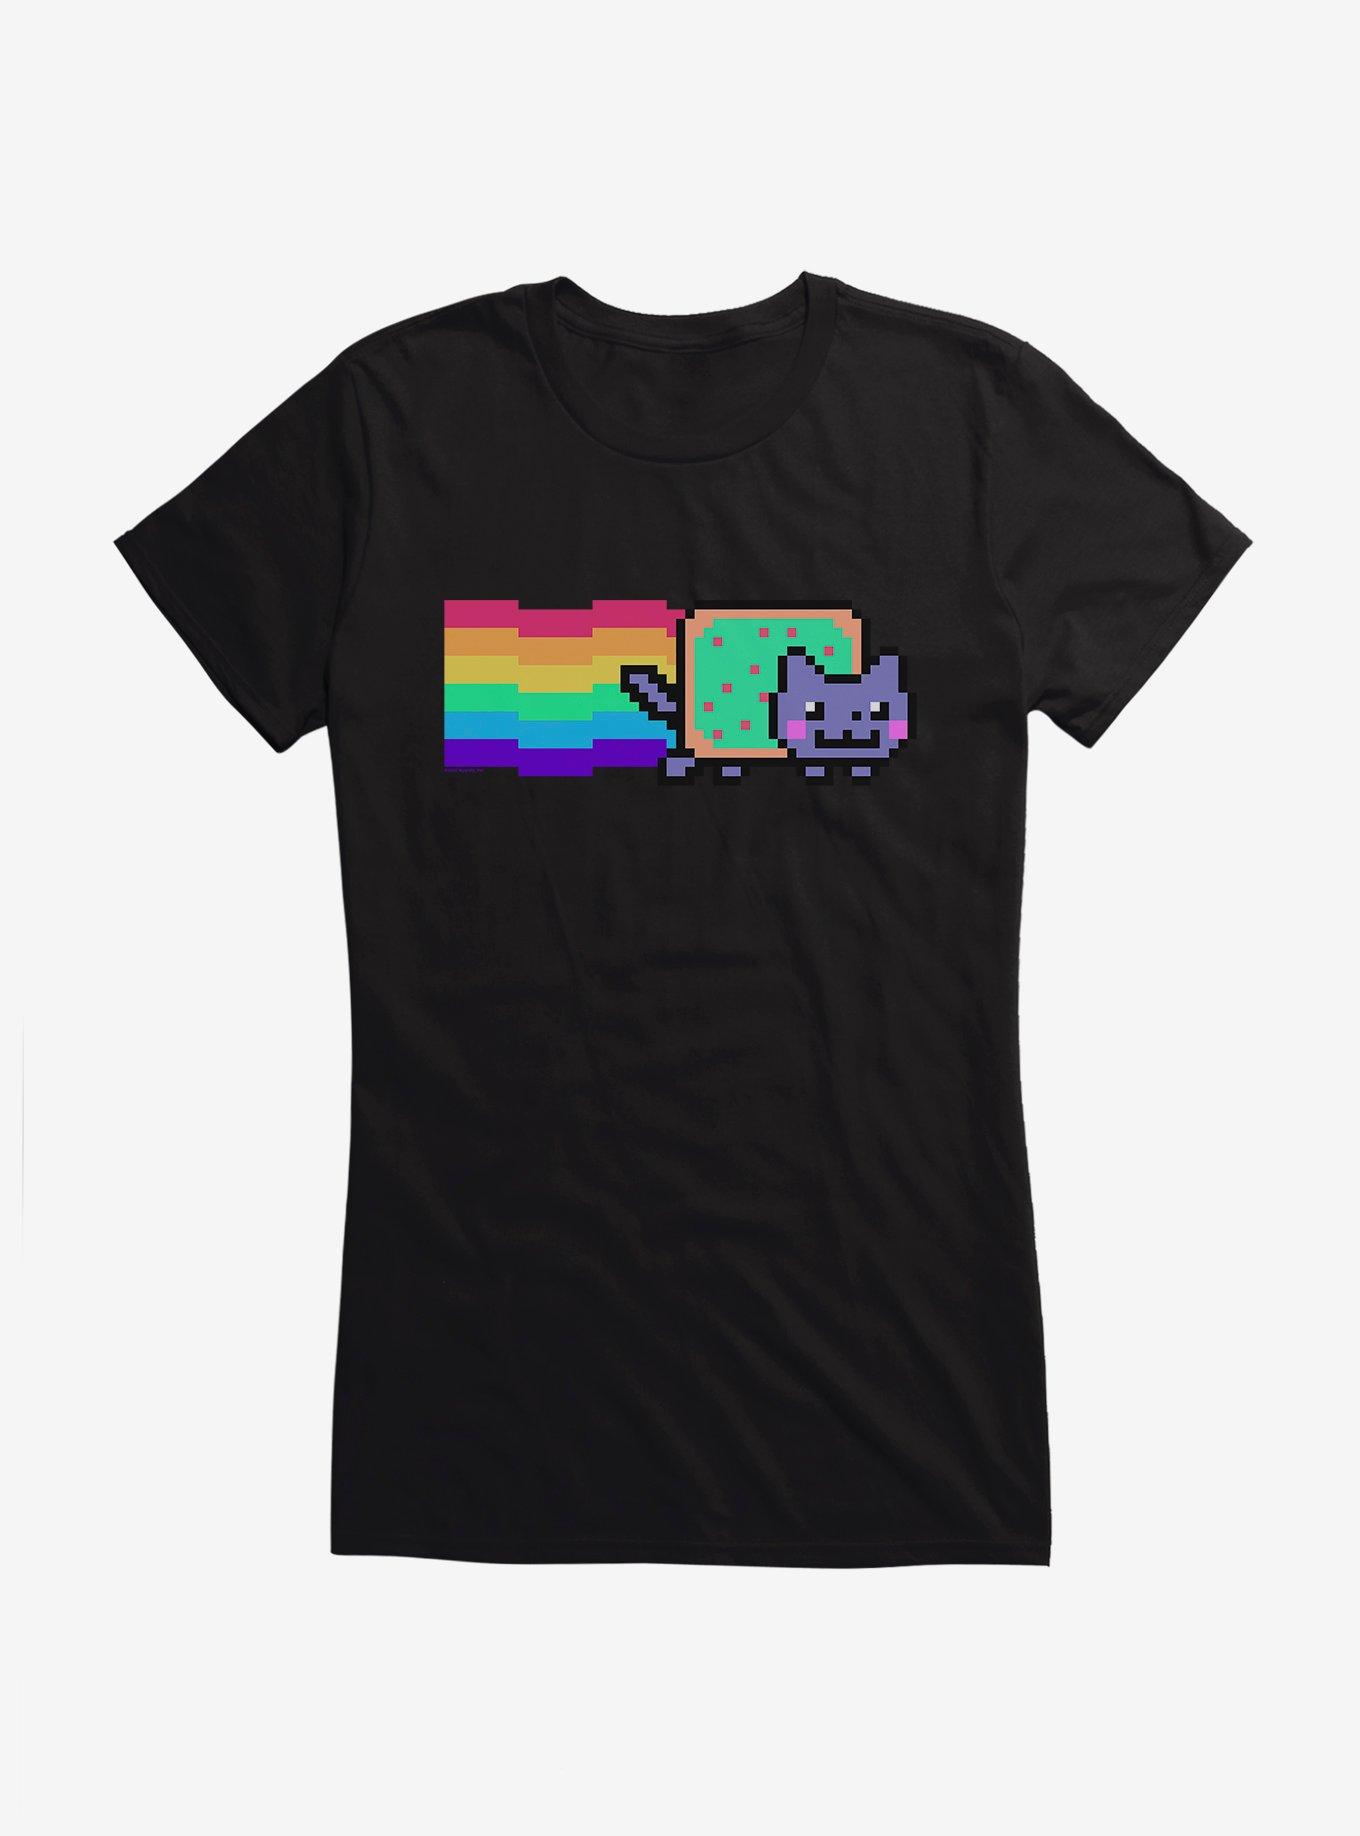 Nyan Cat Vaporwave Girls T-Shirt